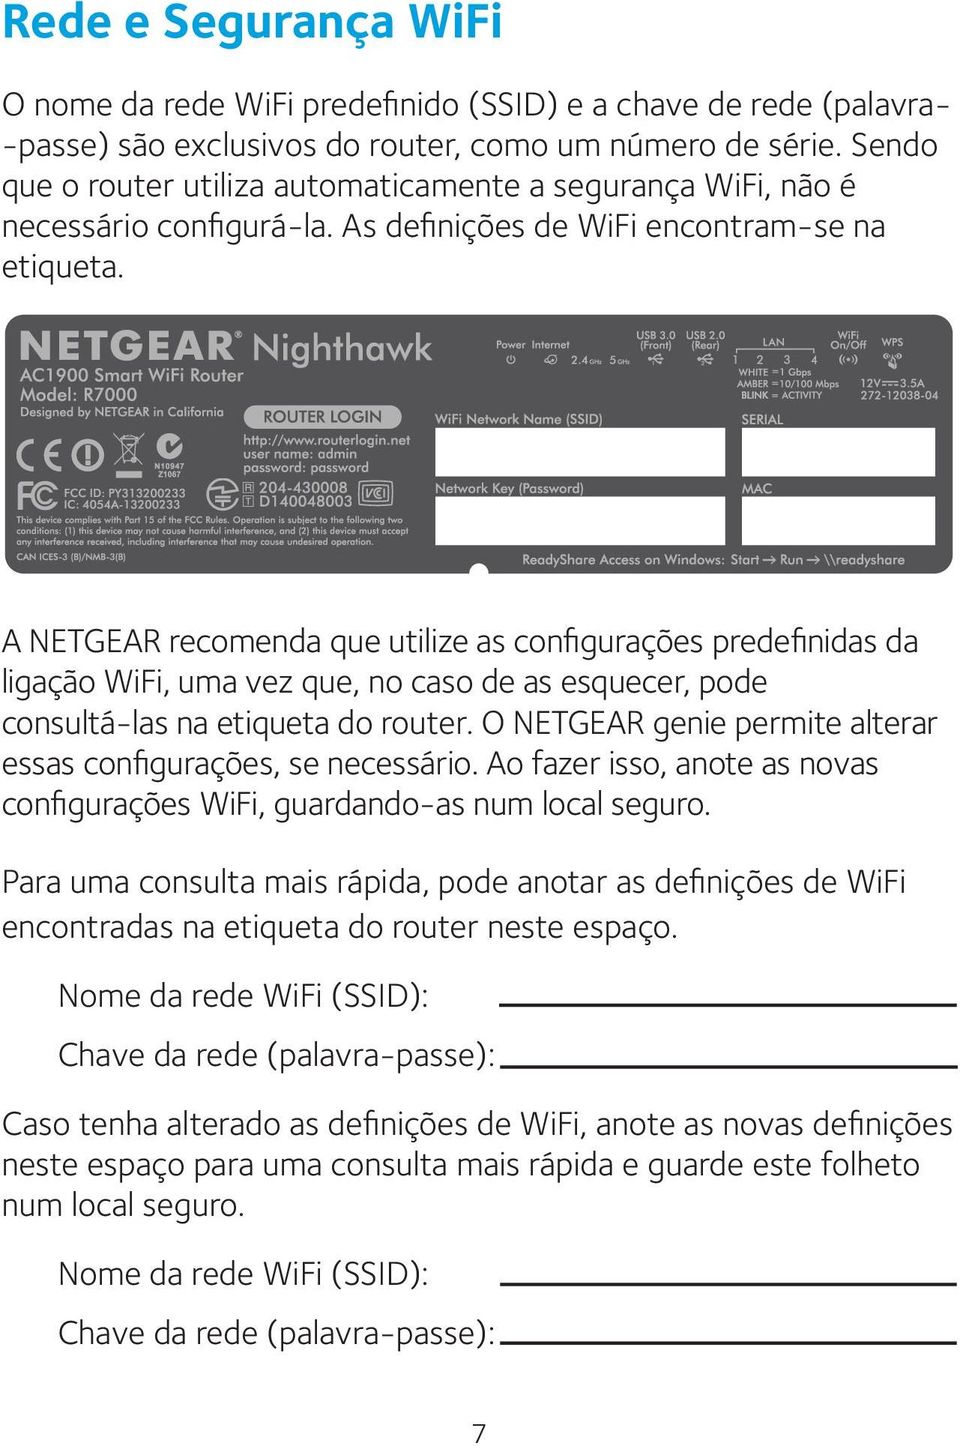 A NETGEAR recomenda que utilize as configurações predefinidas da ligação WiFi, uma vez que, no caso de as esquecer, pode consultá-las na etiqueta do router.